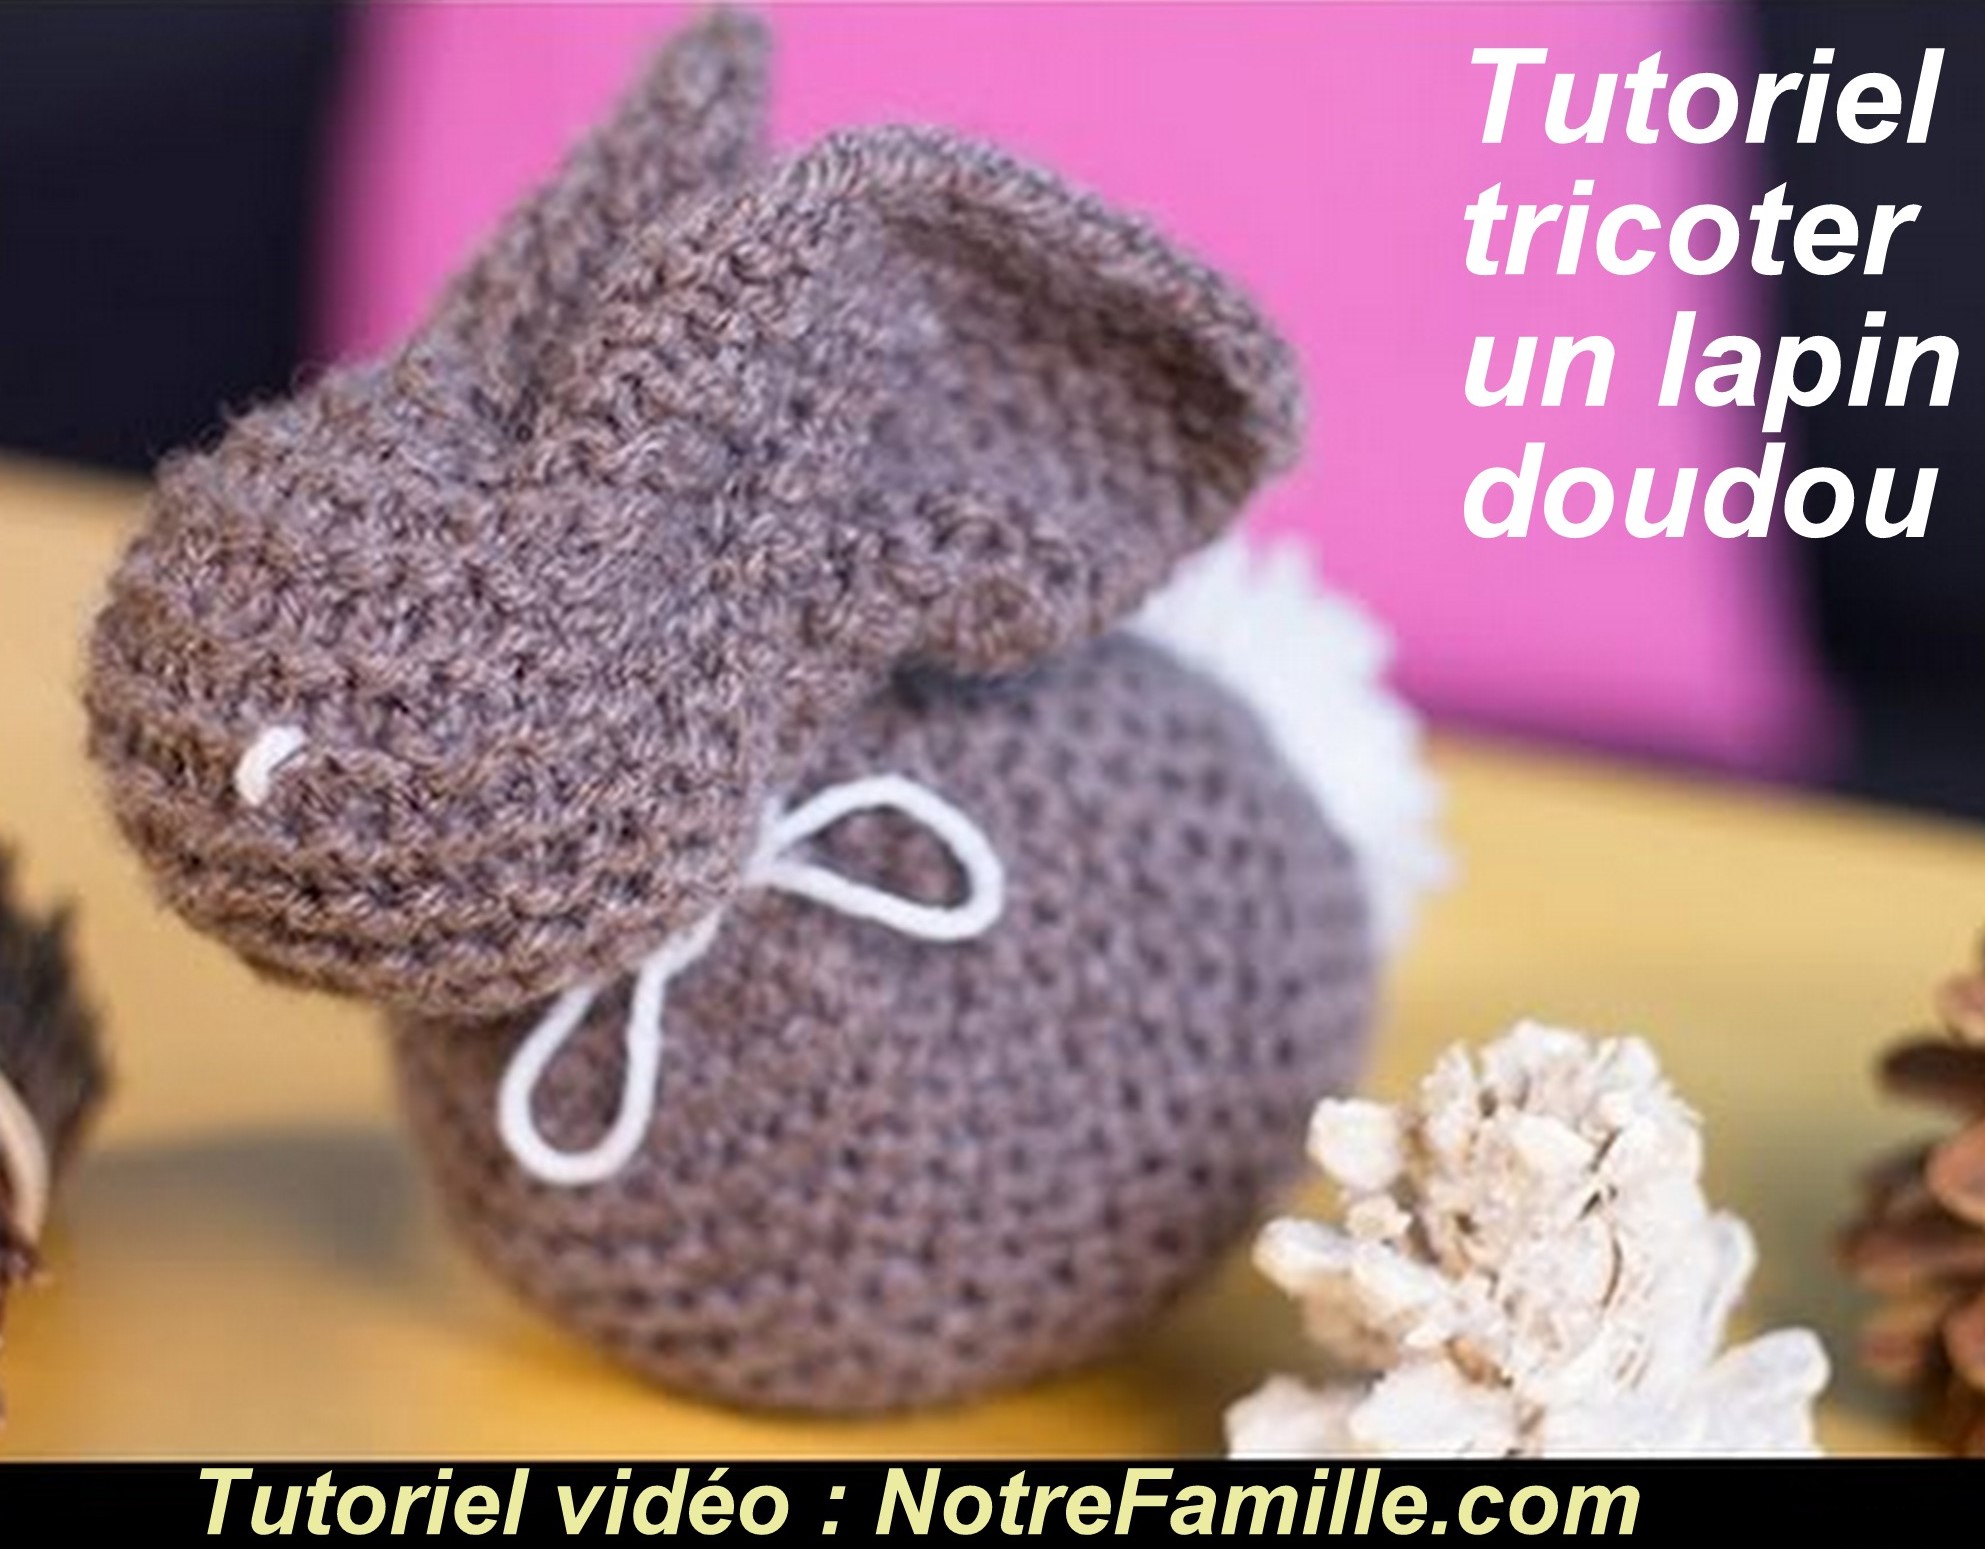 Tricoter un lapin doudou laine, tuto vidéo et tuto images